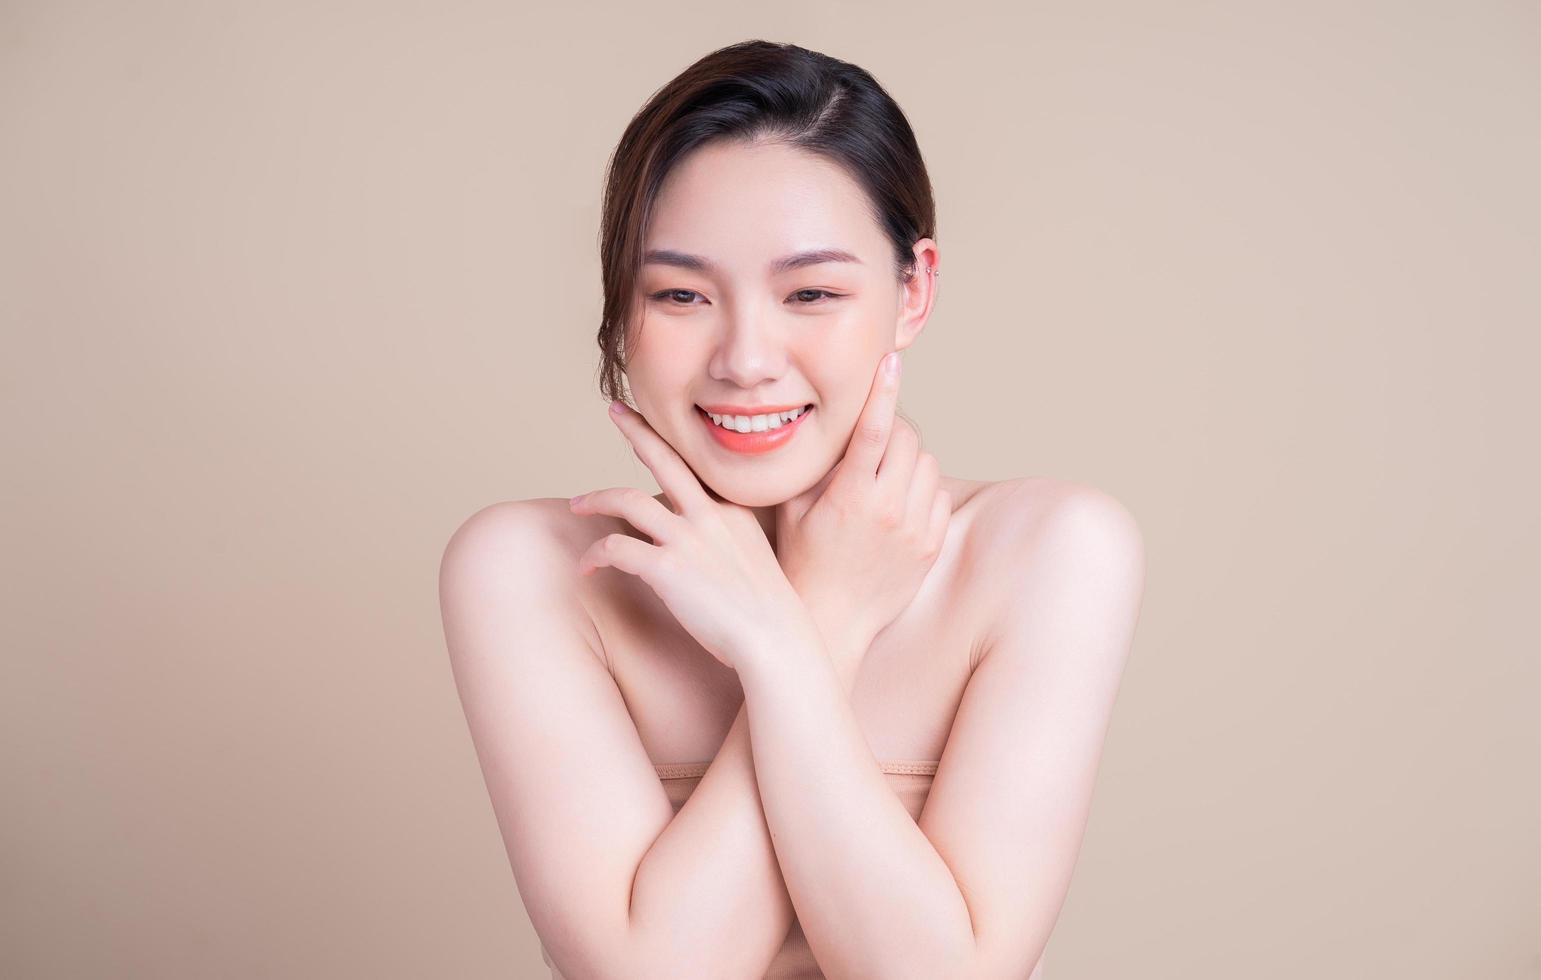 aantrekkelijke jonge Aziatische vrouw met frisse huid. gezichtsverzorging, gezichtsbehandeling, vrouw schoonheid huid geïsoleerd op een witte achtergrond. cosmetologie, schoonheidshuid en cosmetisch concept foto